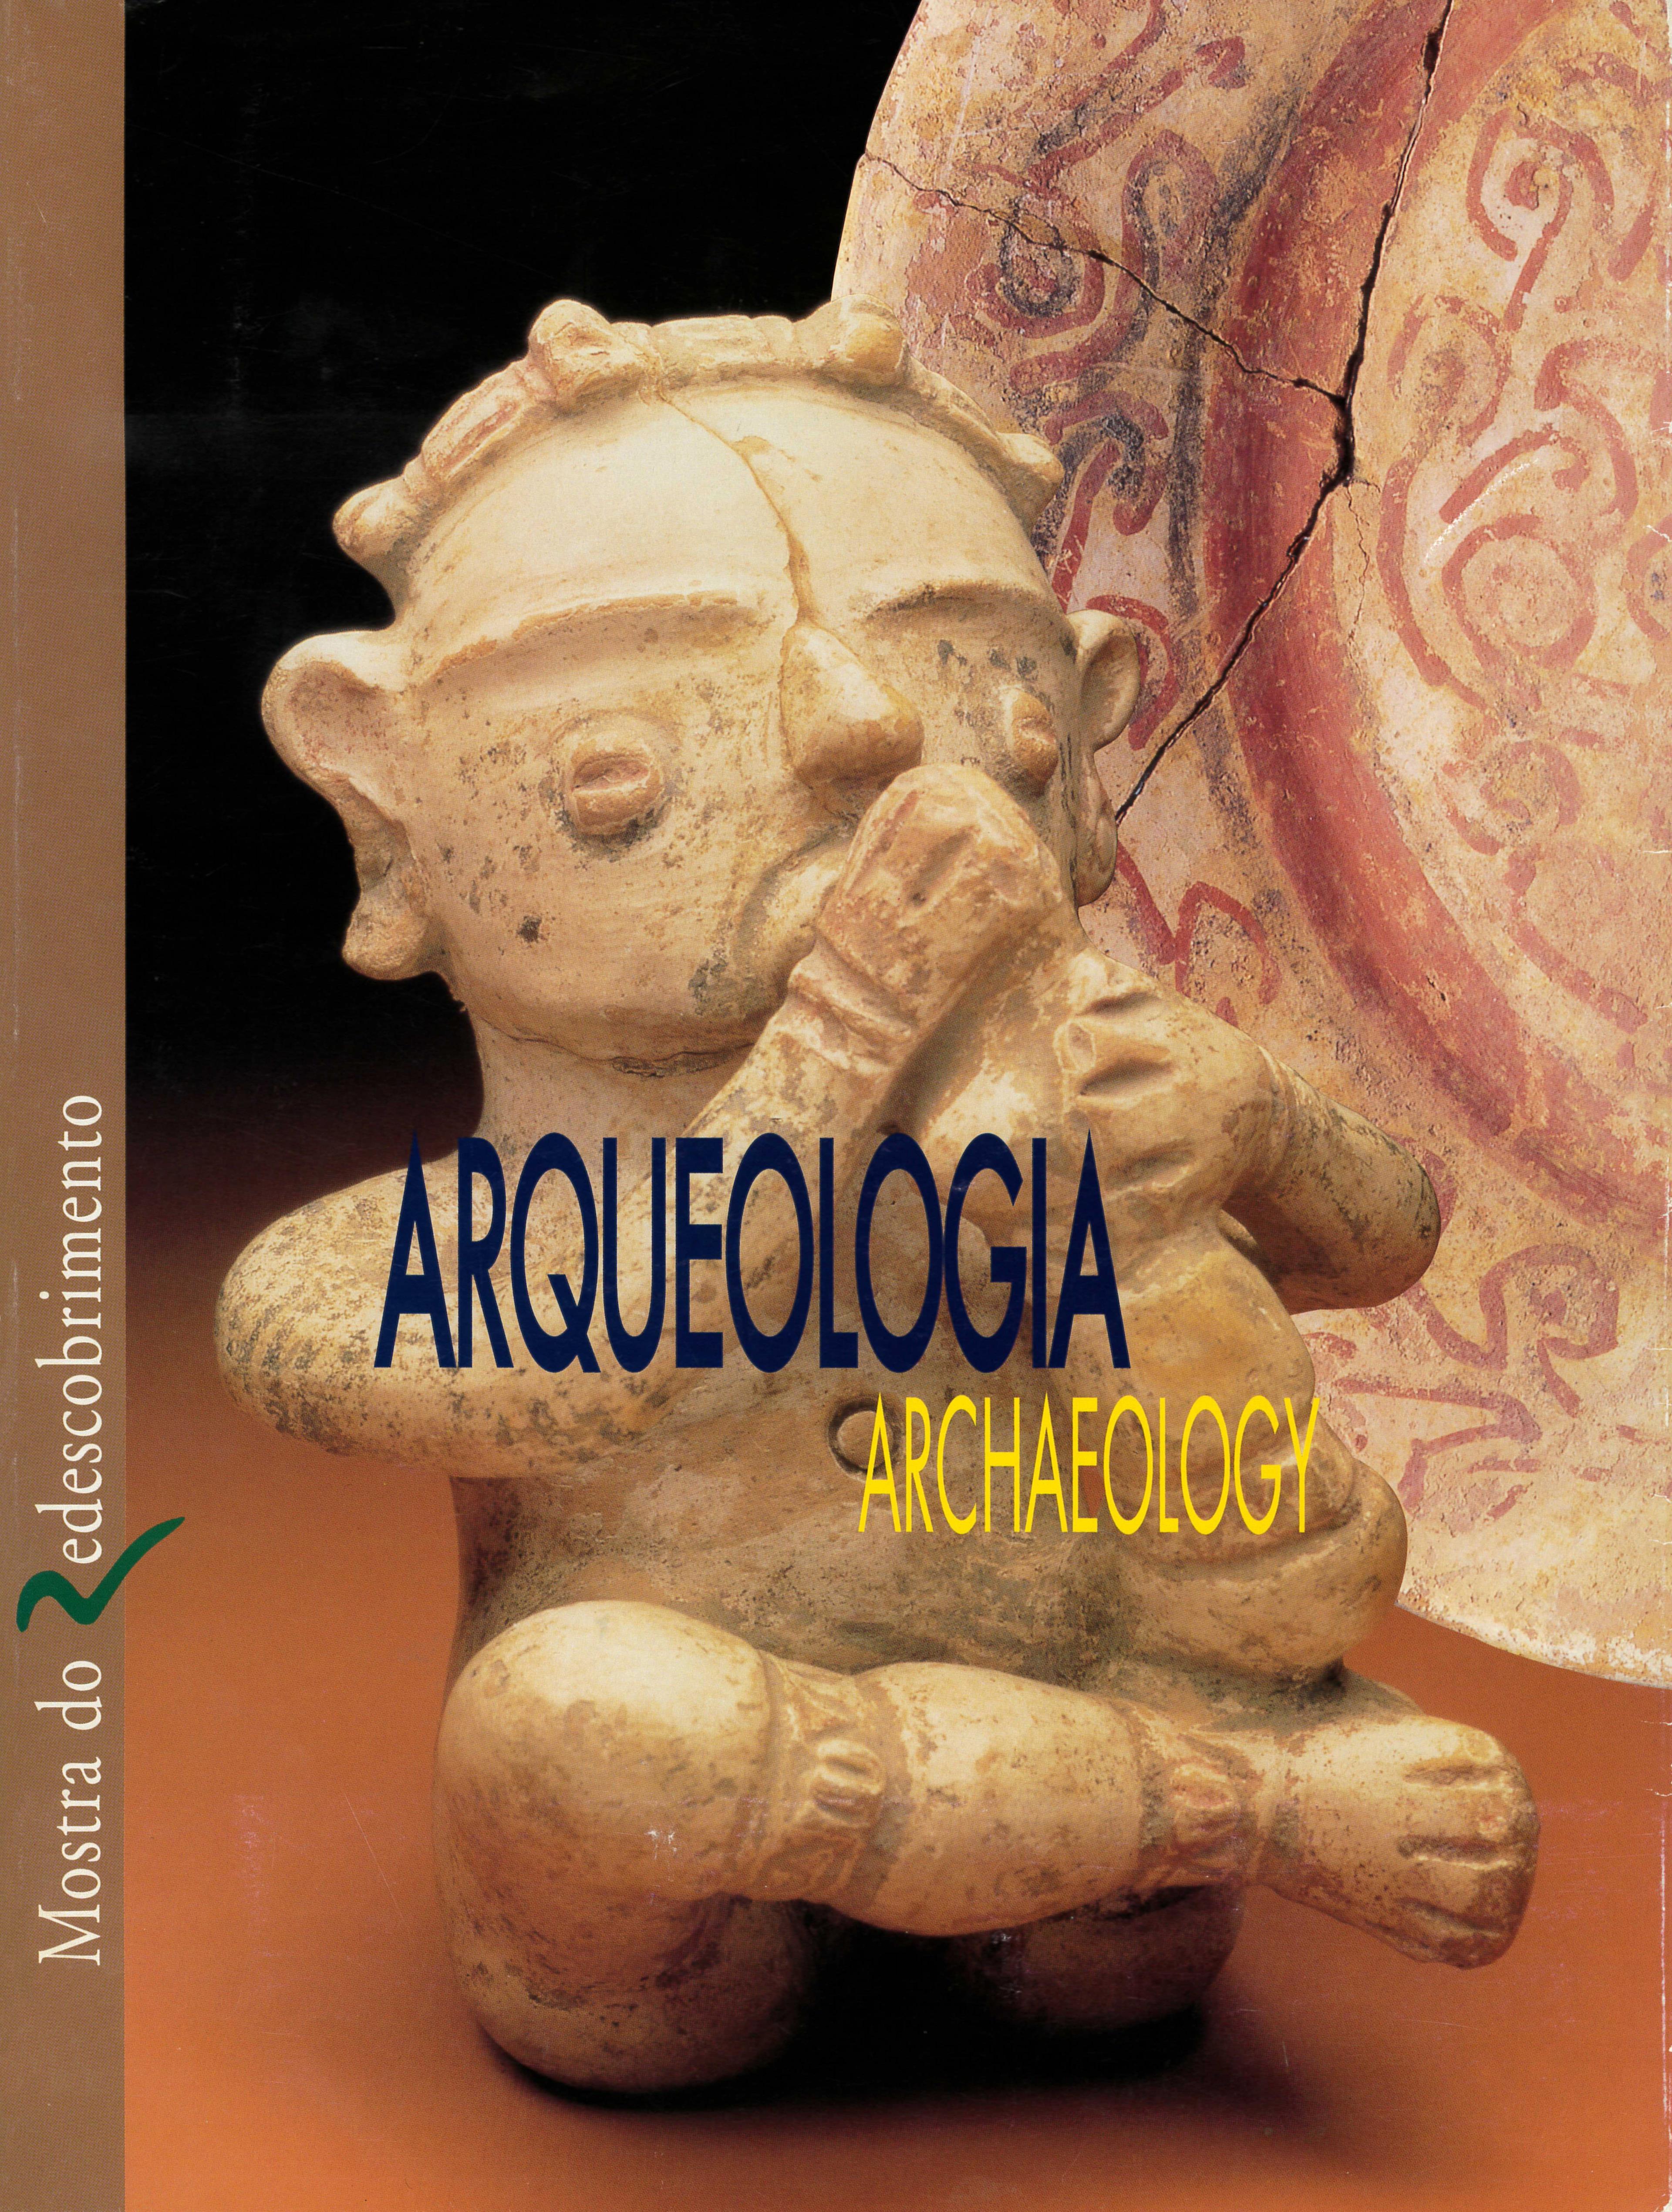 Mostra do Redescobrimento: Arqueologia